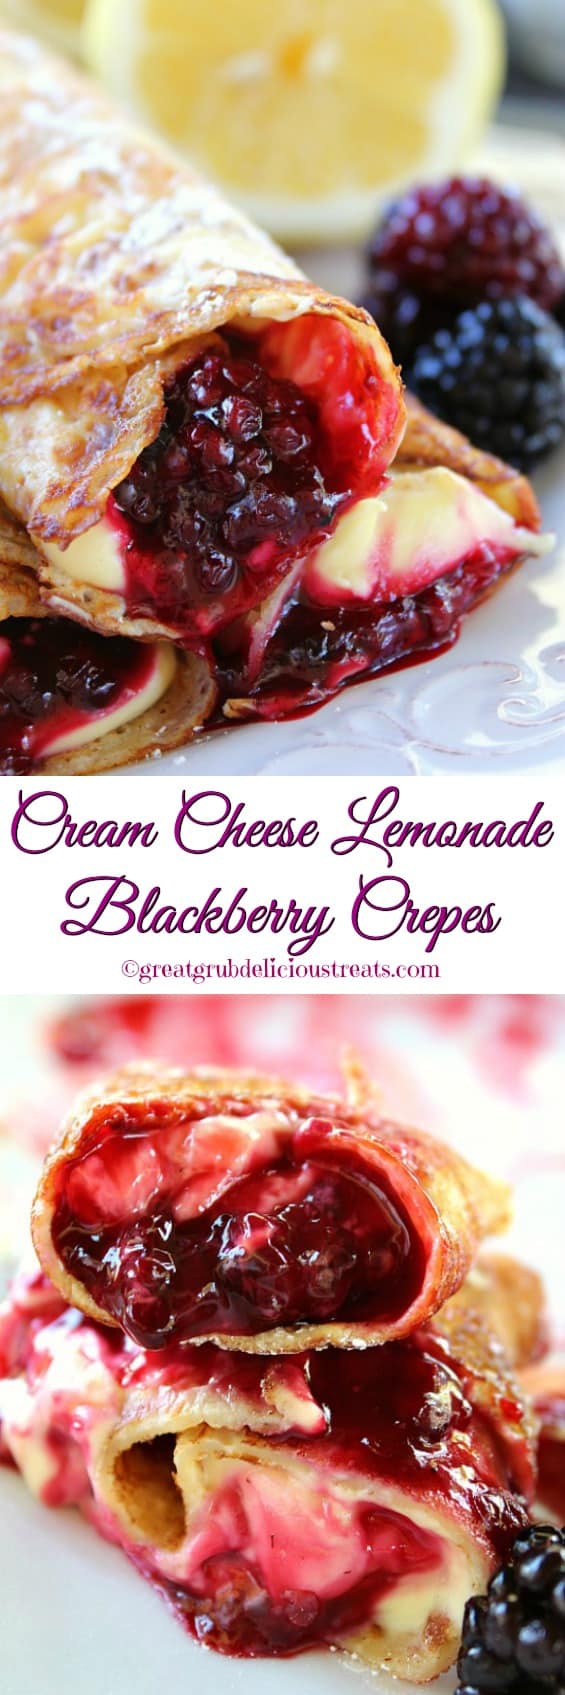 Cream Cheese Lemonade Blackberry Crepes